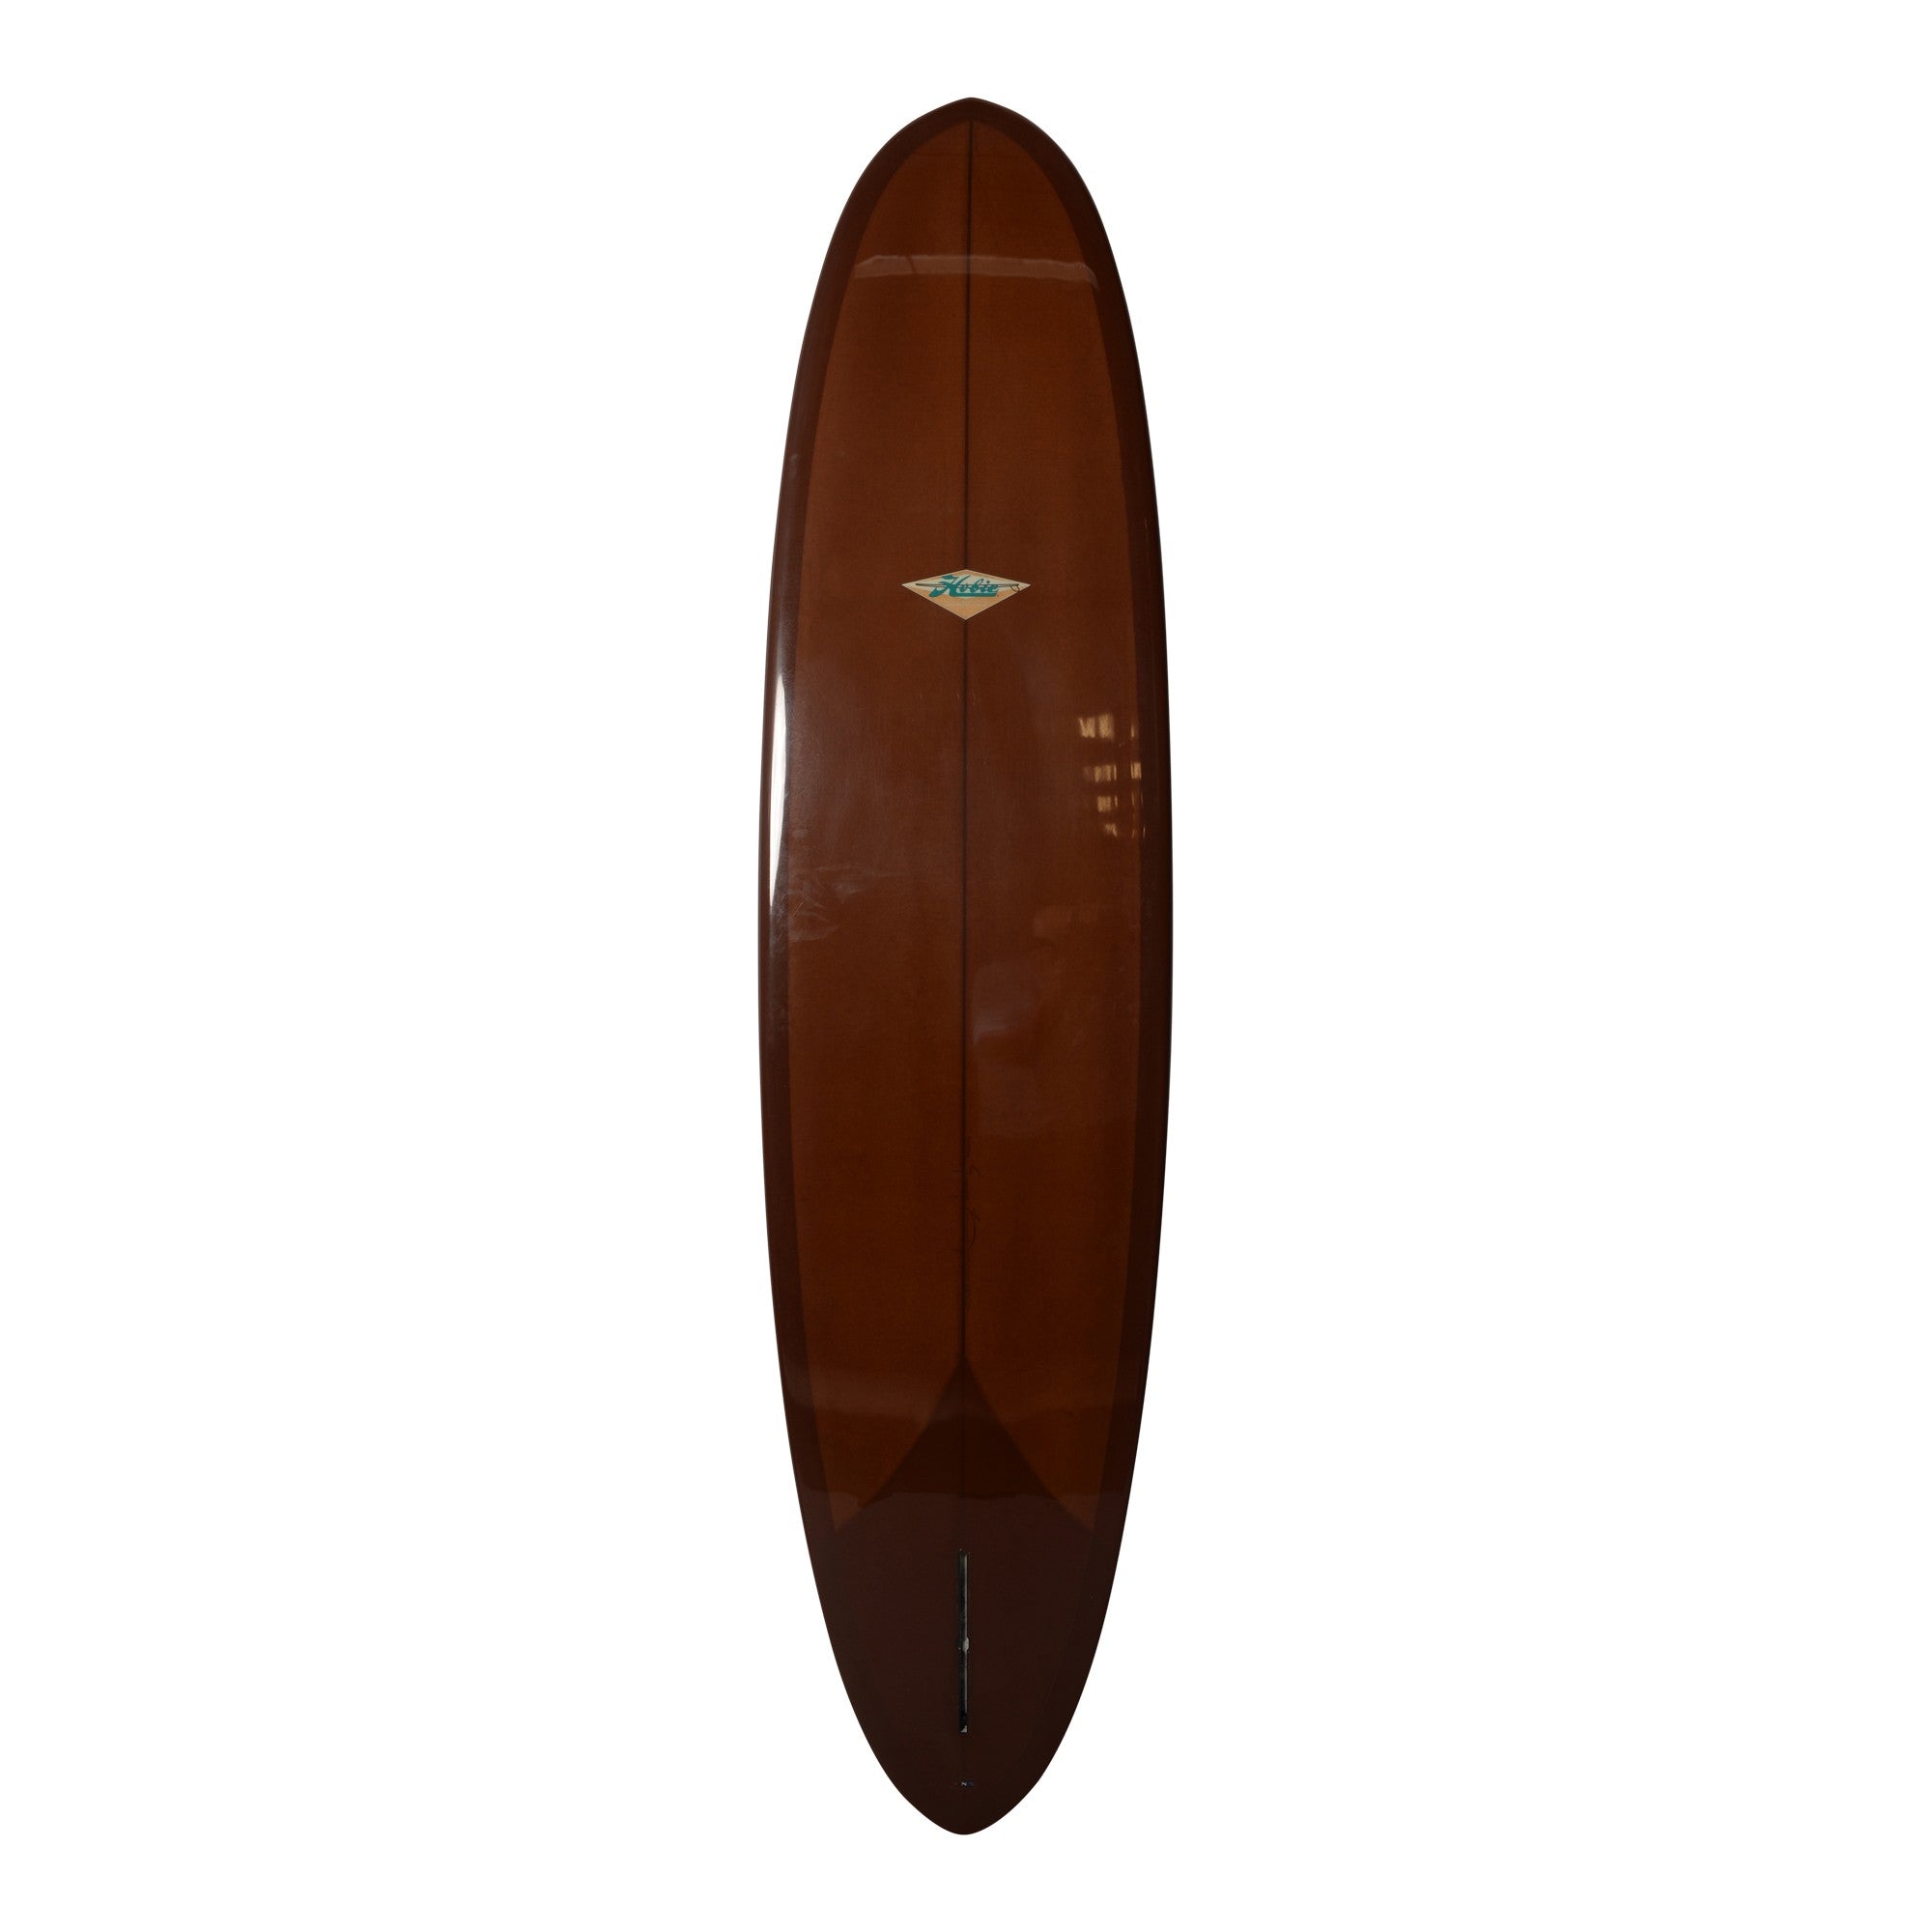 HOBIE Surfboards - Retro Egg - 8'0 (PU) - Chocolate